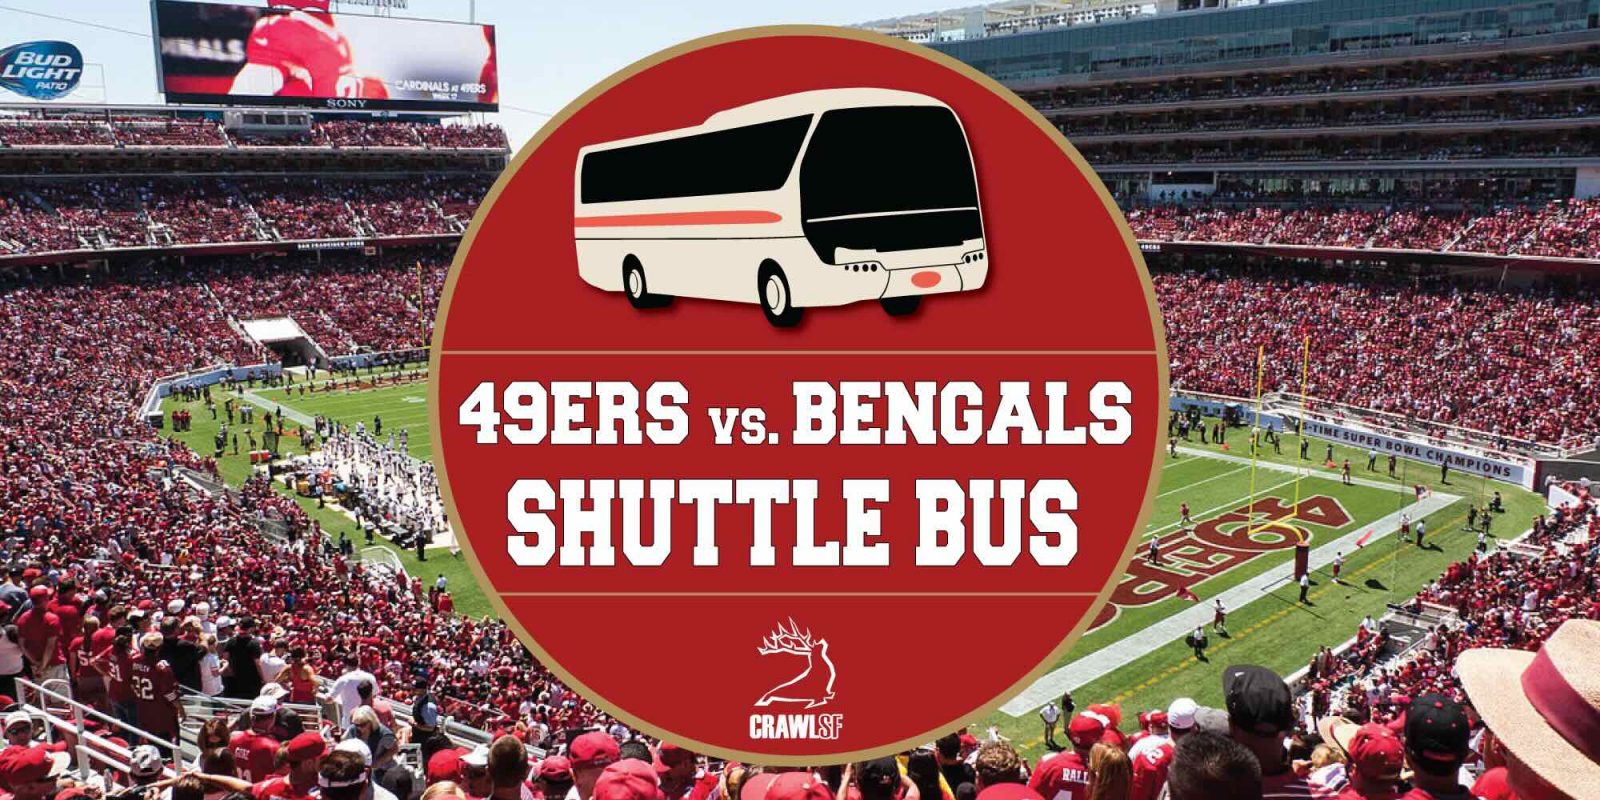 49ers vs. Bengals Levi's Stadium Shuttle Bus